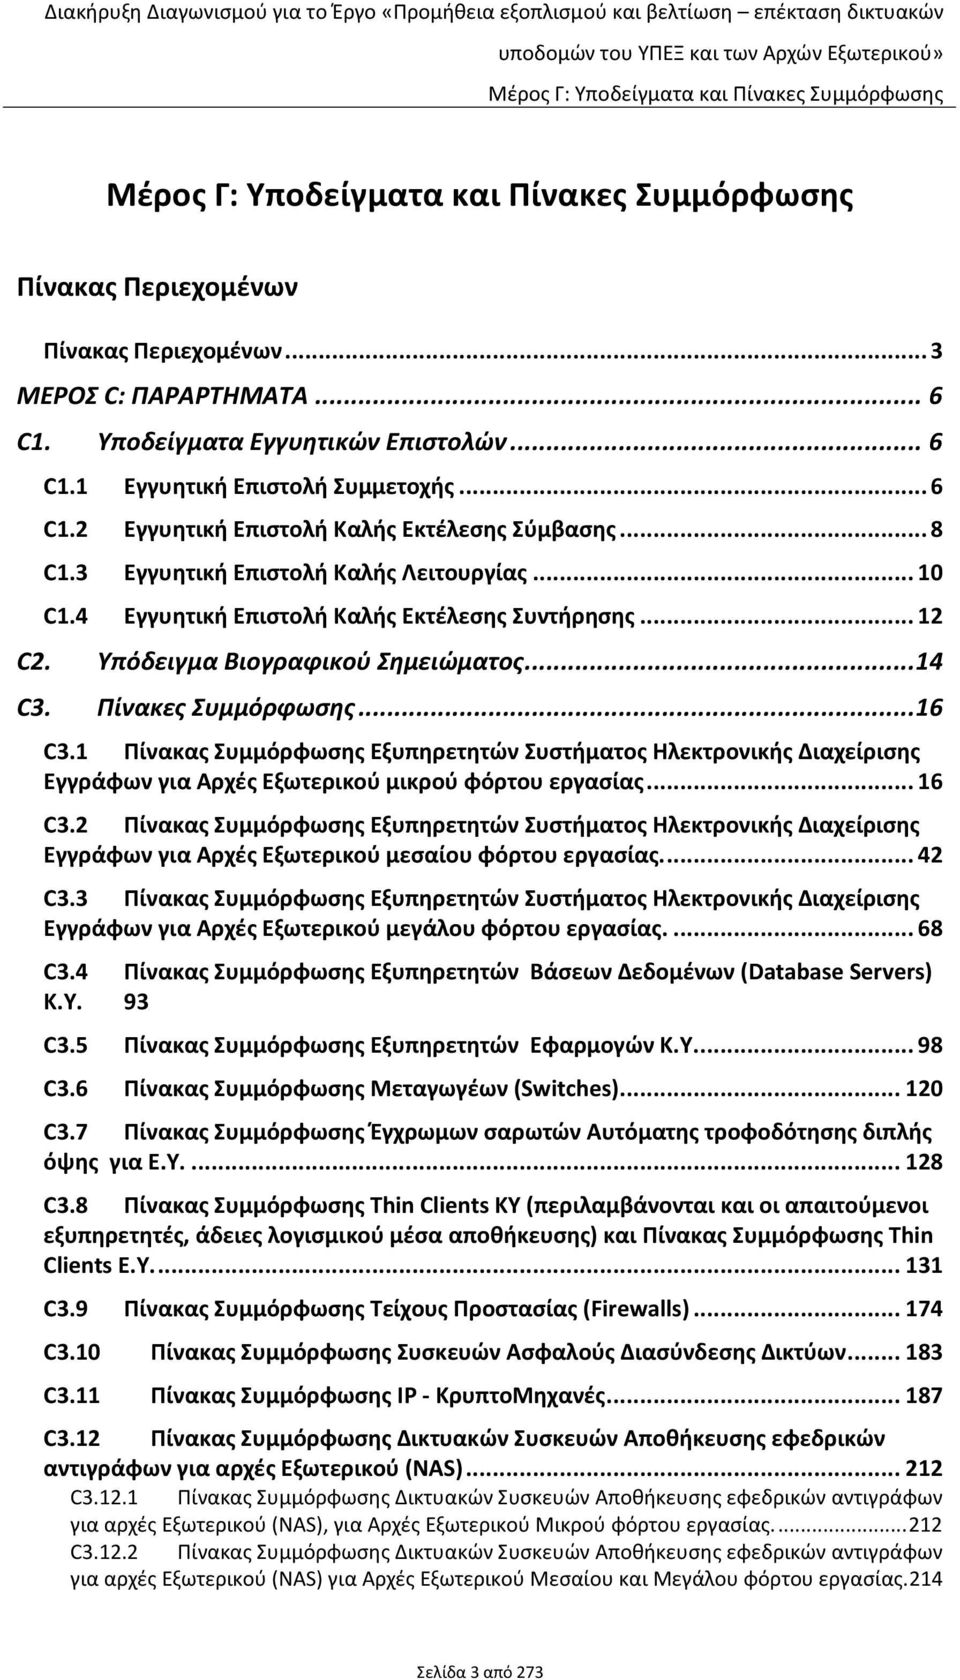 1 Πίνακας Συμμόρφωσης Εξυπηρετητών Συστήματος Ηλεκτρονικής Διαχείρισης Εγγράφων για Αρχές Εξωτερικού μικρού φόρτου εργασίας... 16 C3.